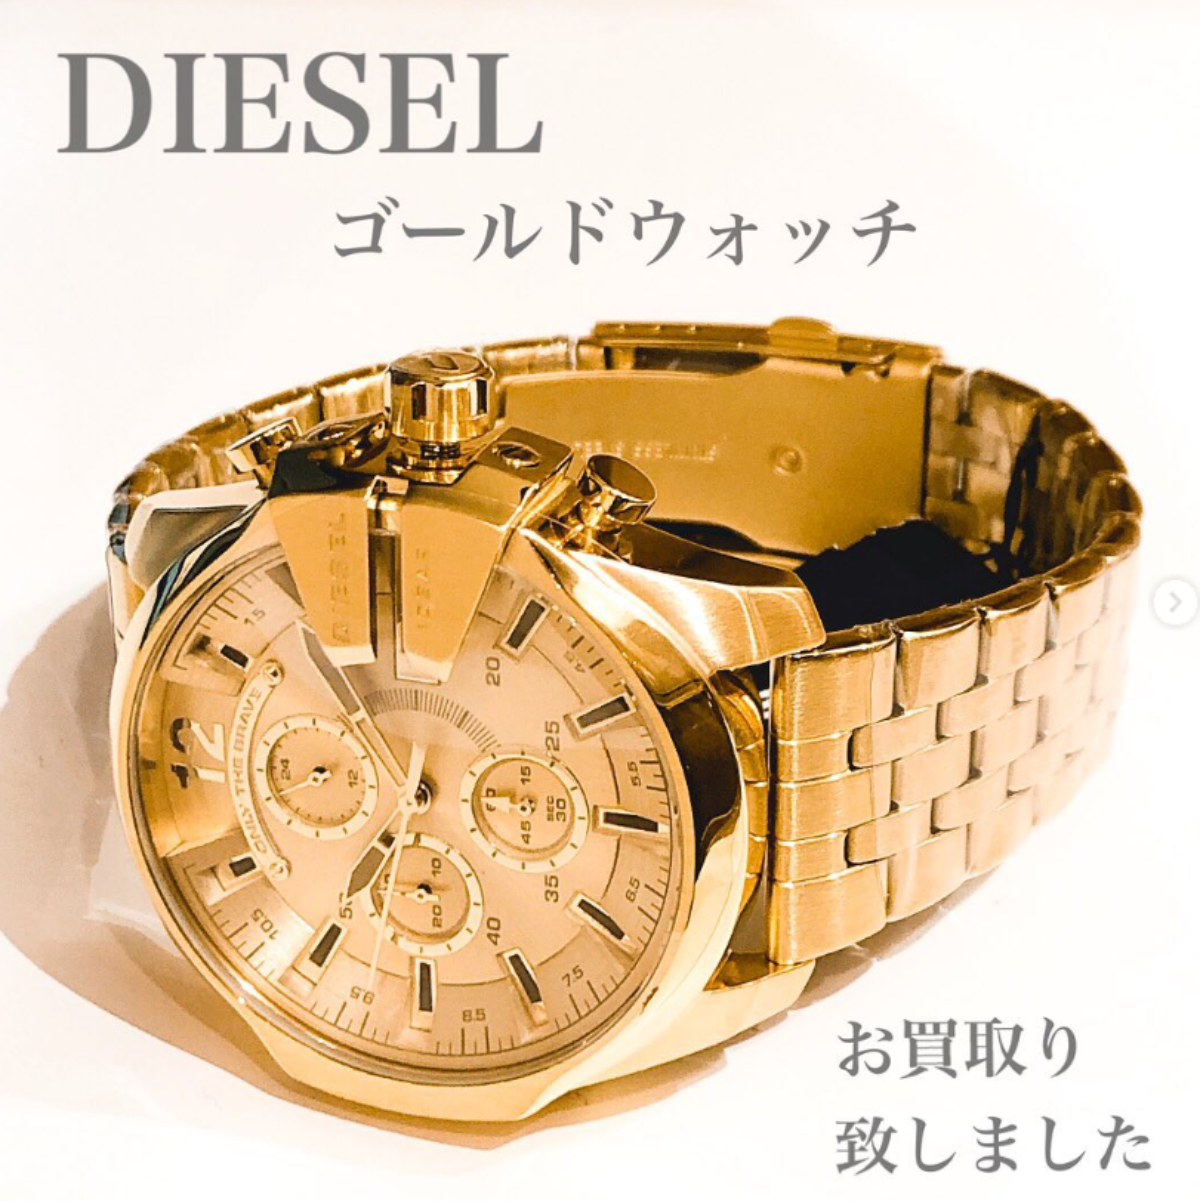 DIESEL 腕時計 DZ-4565 - 腕時計(アナログ)